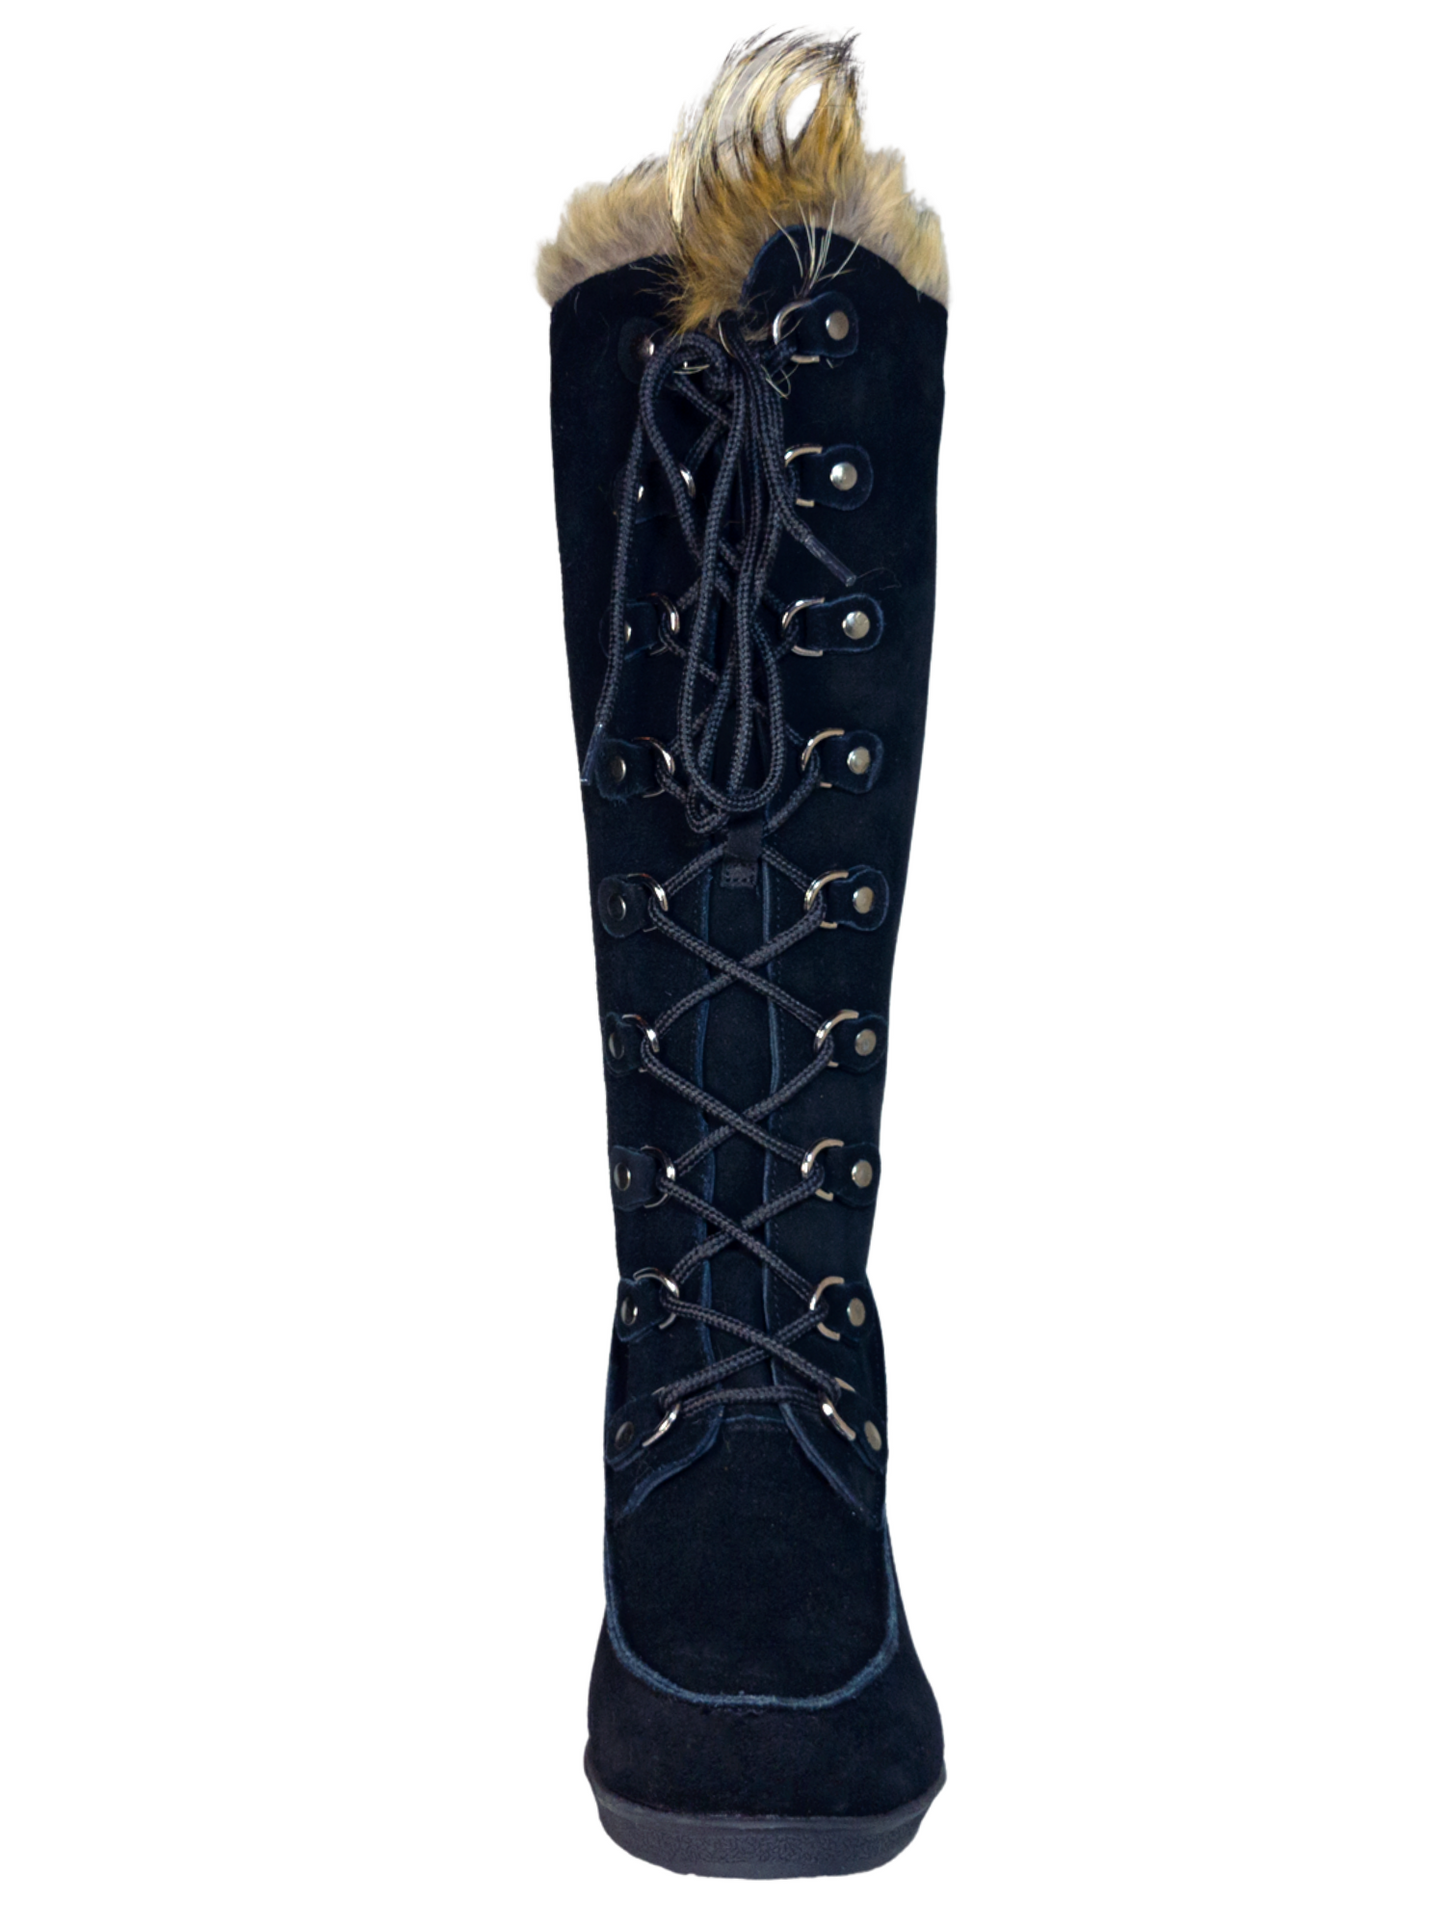 Botas de Invierno de Cuña de Piel Gamuza/Pelo de Zorro para Mujer 'Bearpaw' - ID: 7133 Winter Boots Bearpaw 